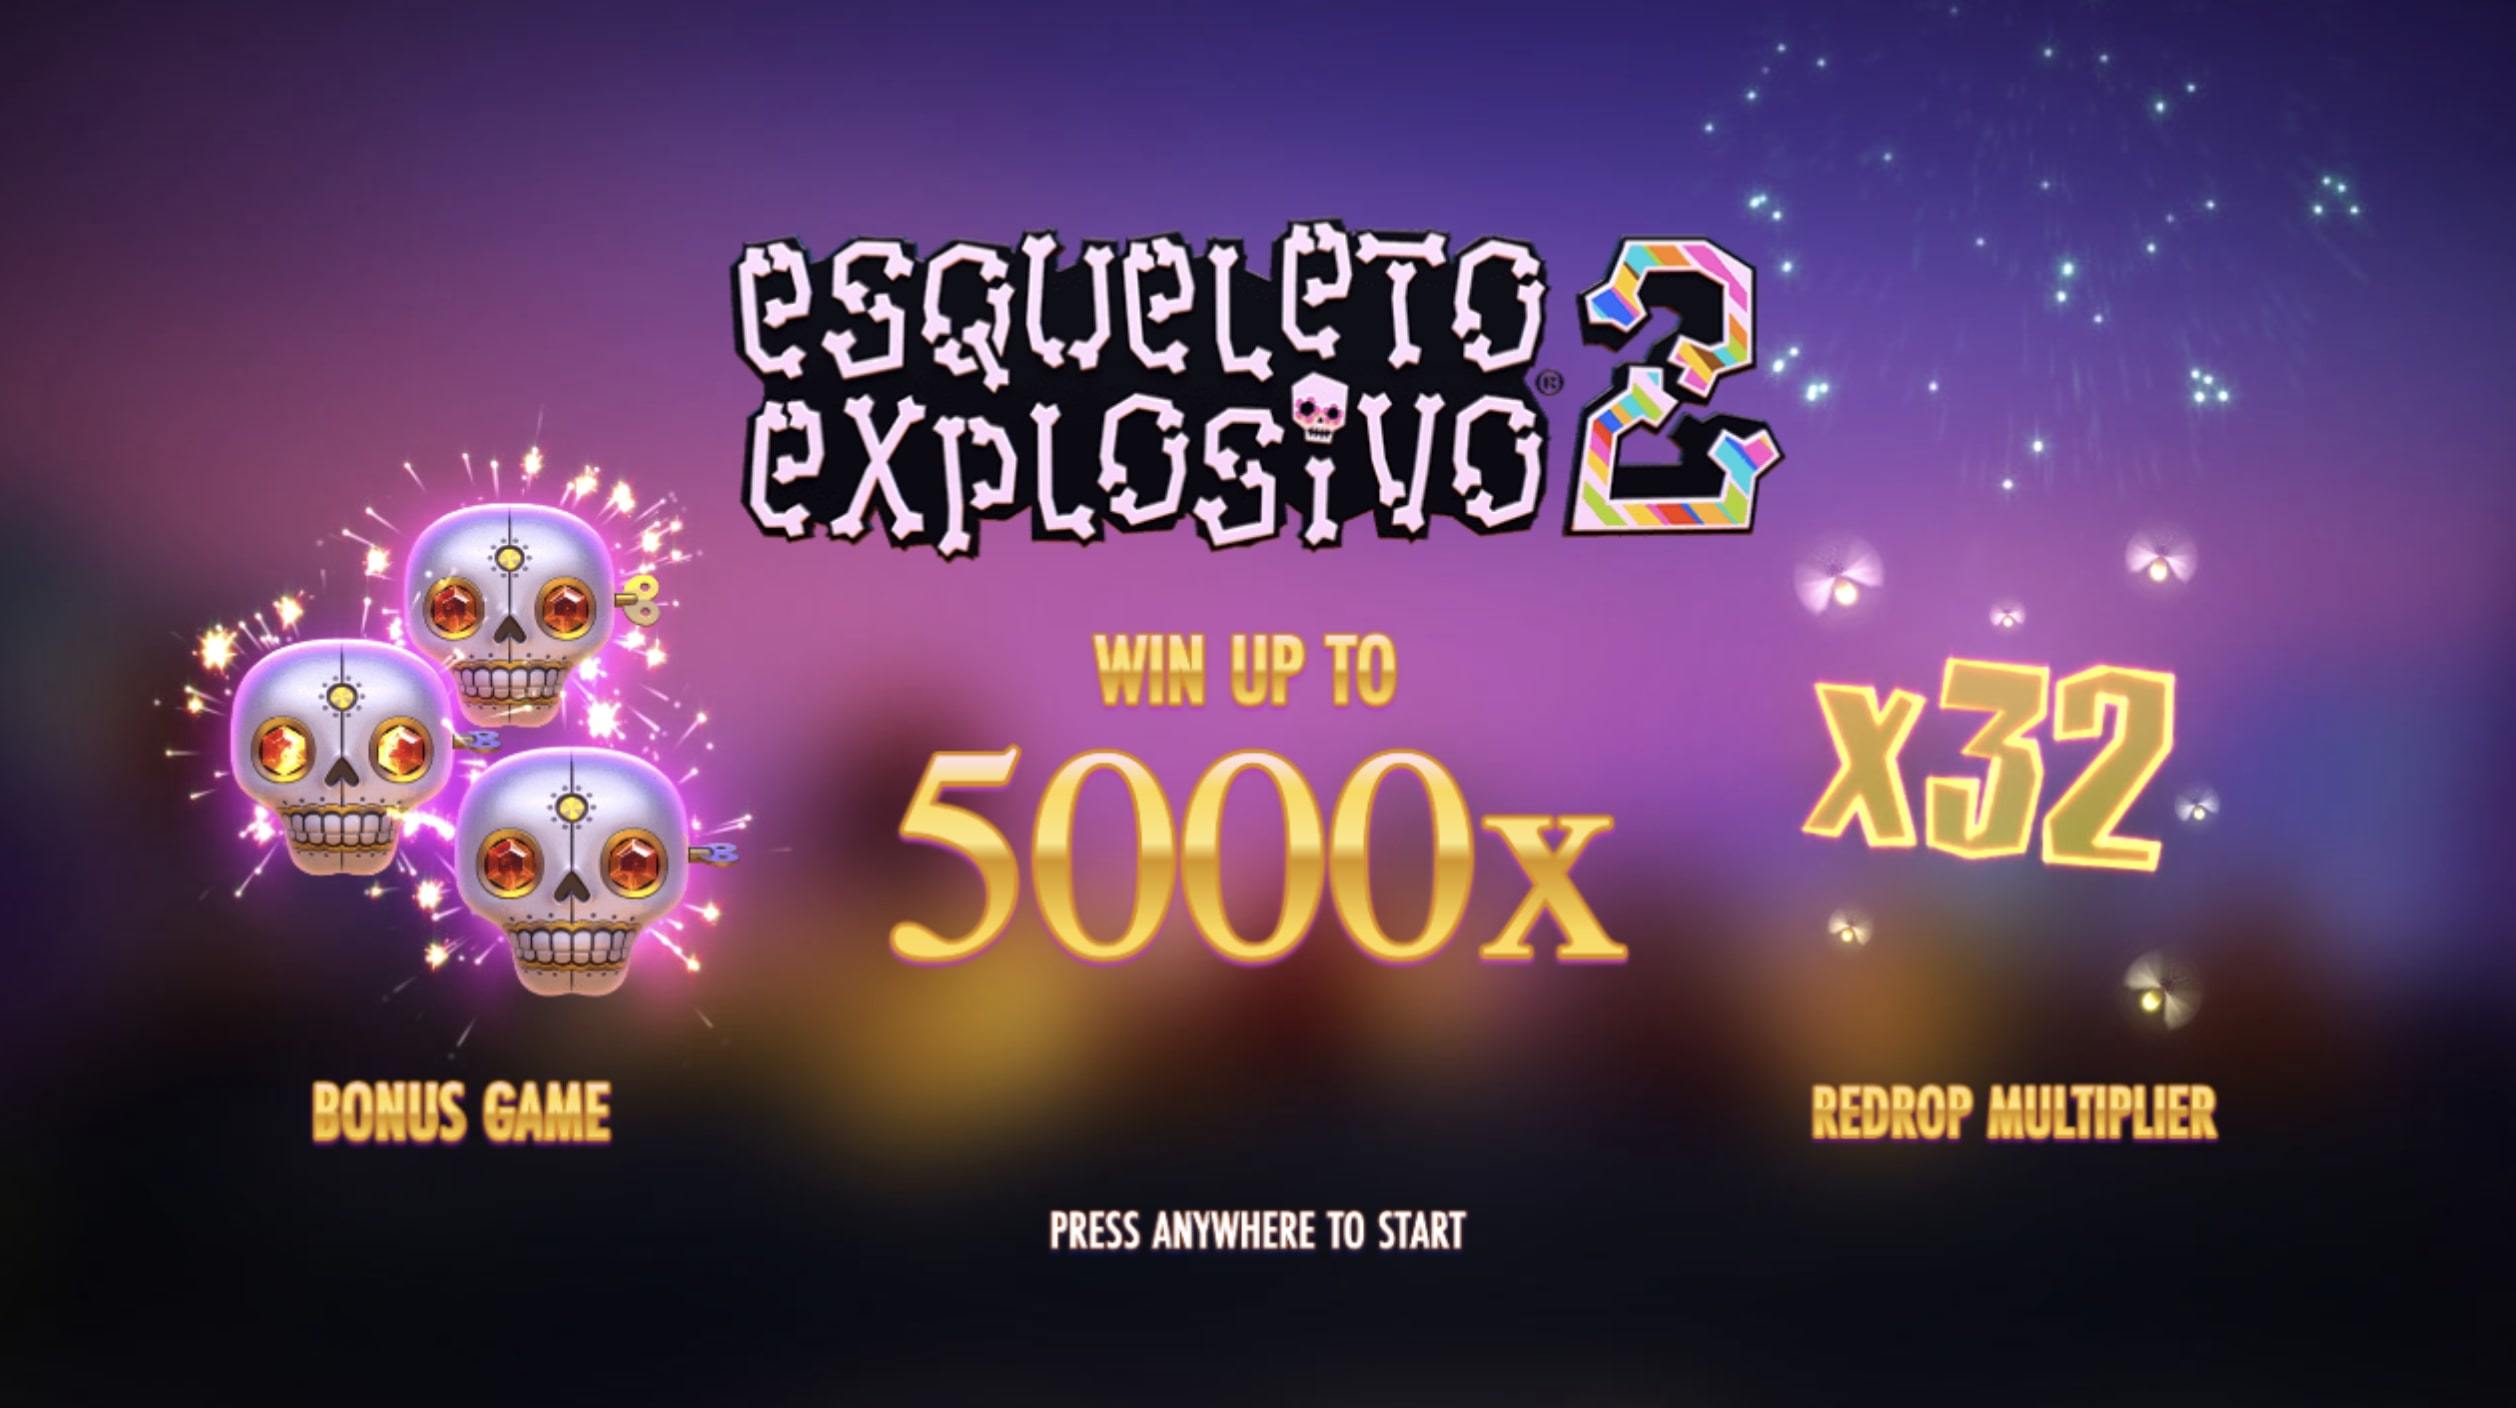  Esqueleto Explosivo 2 Slot bonus features